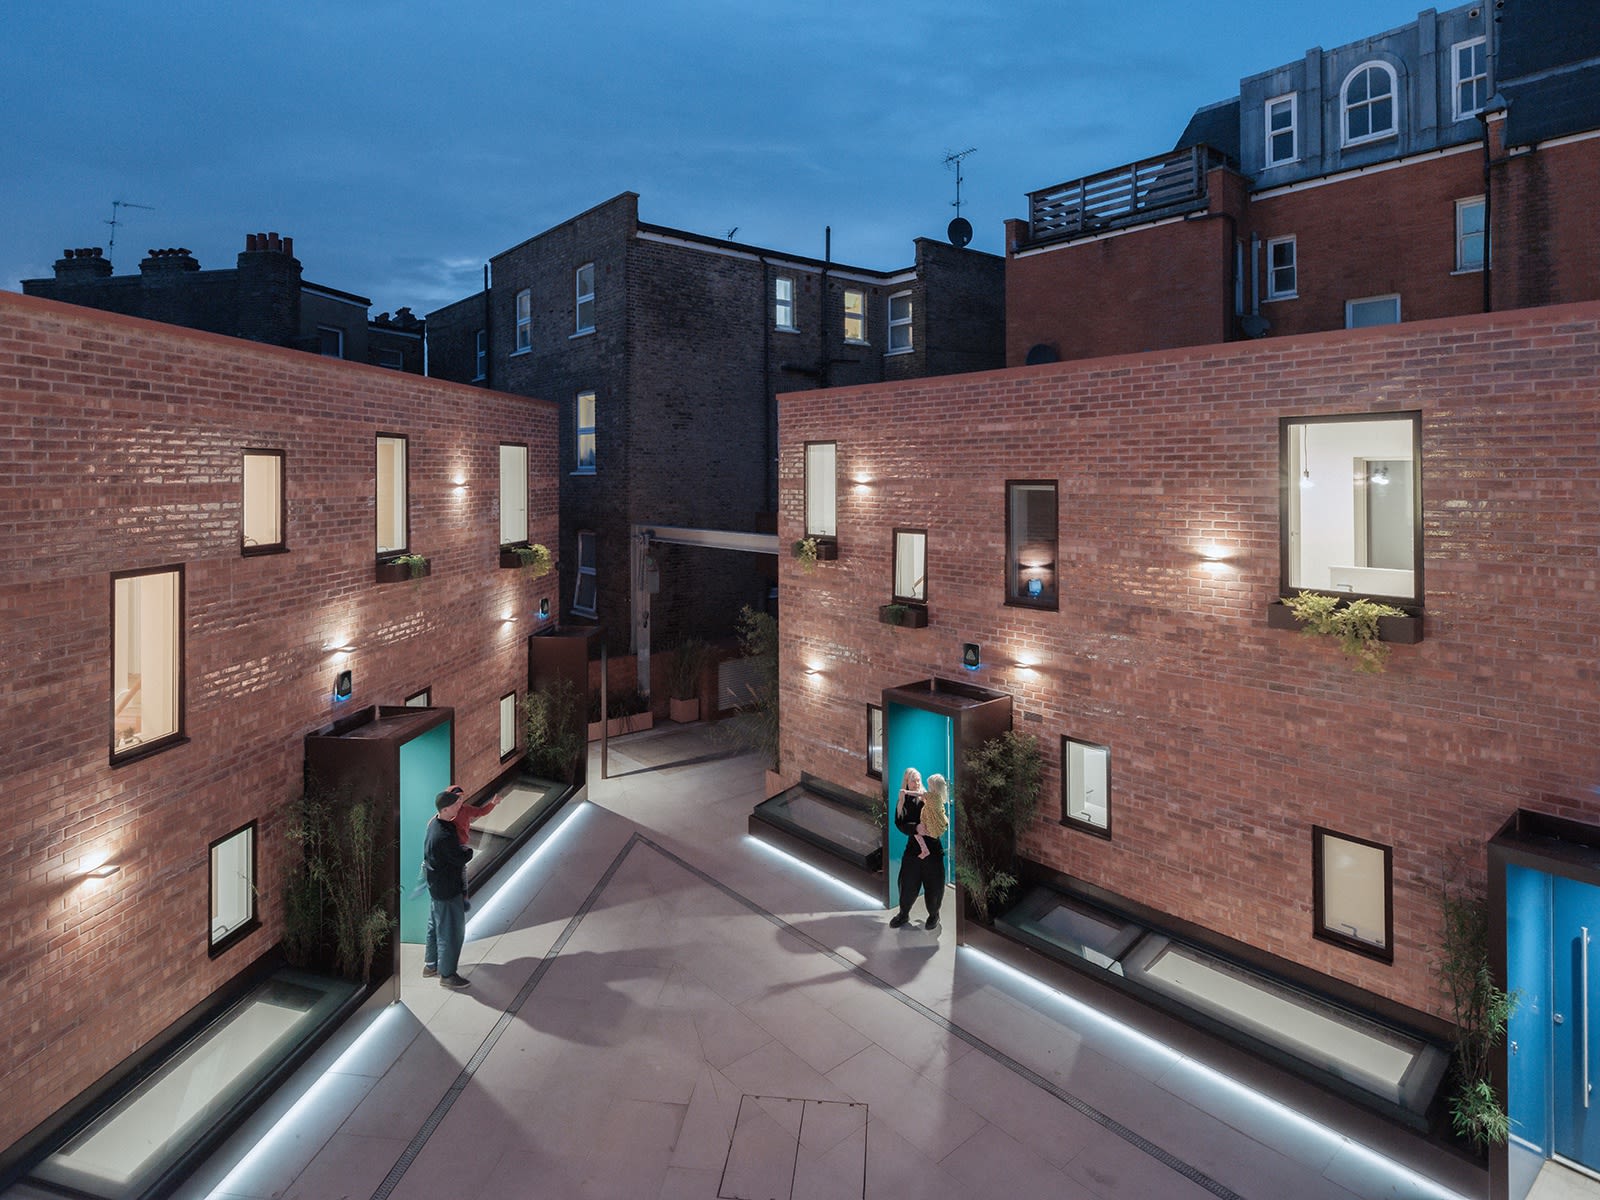 Penrose Mews, Penrose Night View of Courtyard, 2020